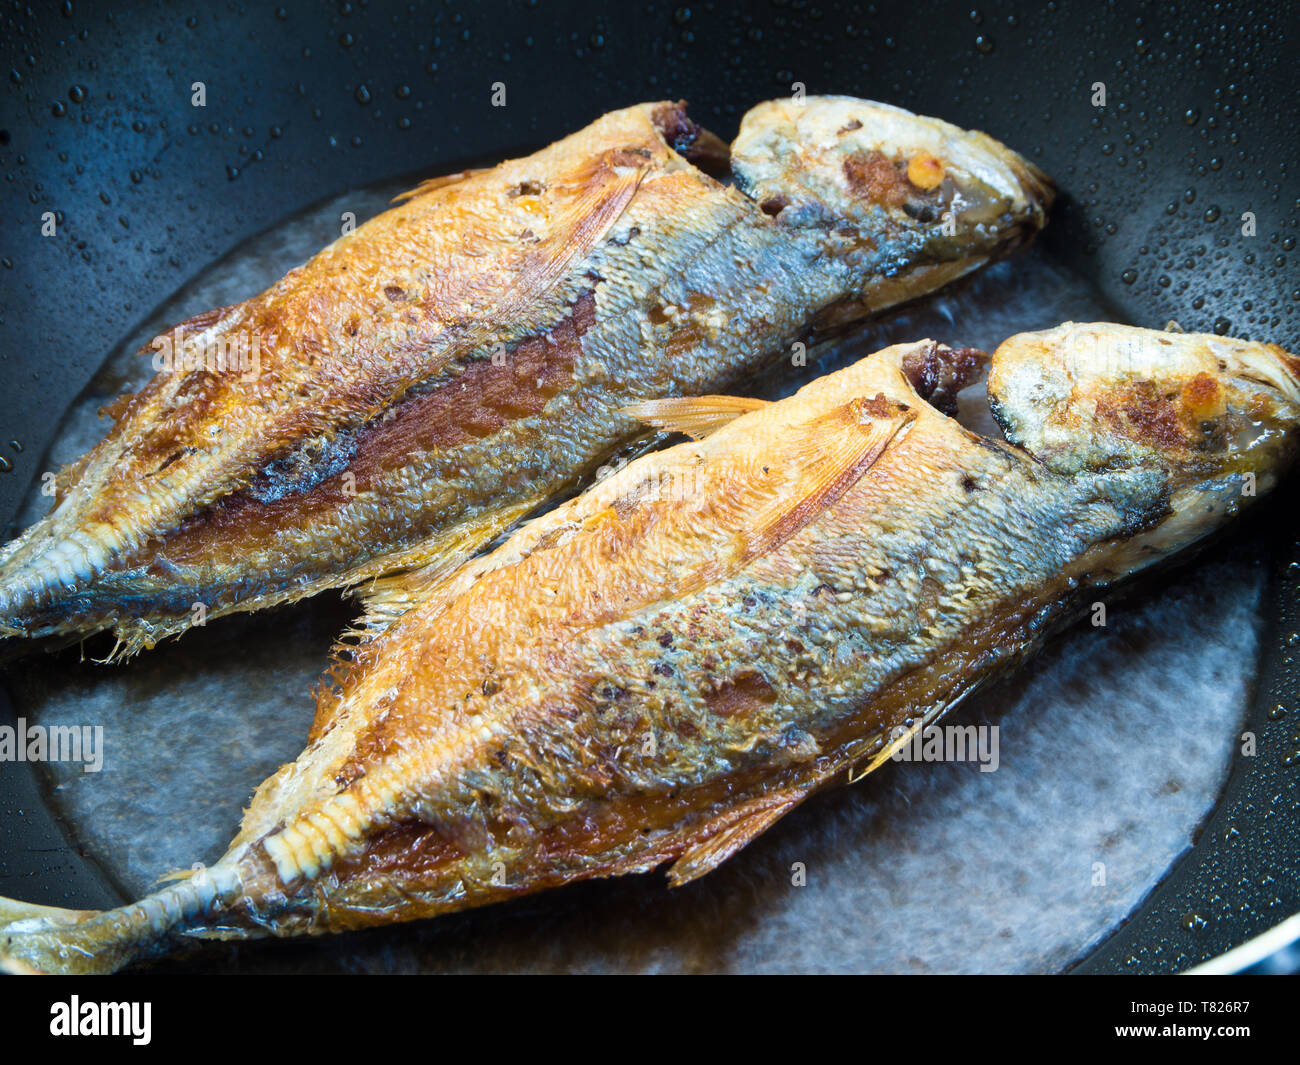 Twin Sea fisch braten in einer Pfanne Stockfotografie - Alamy